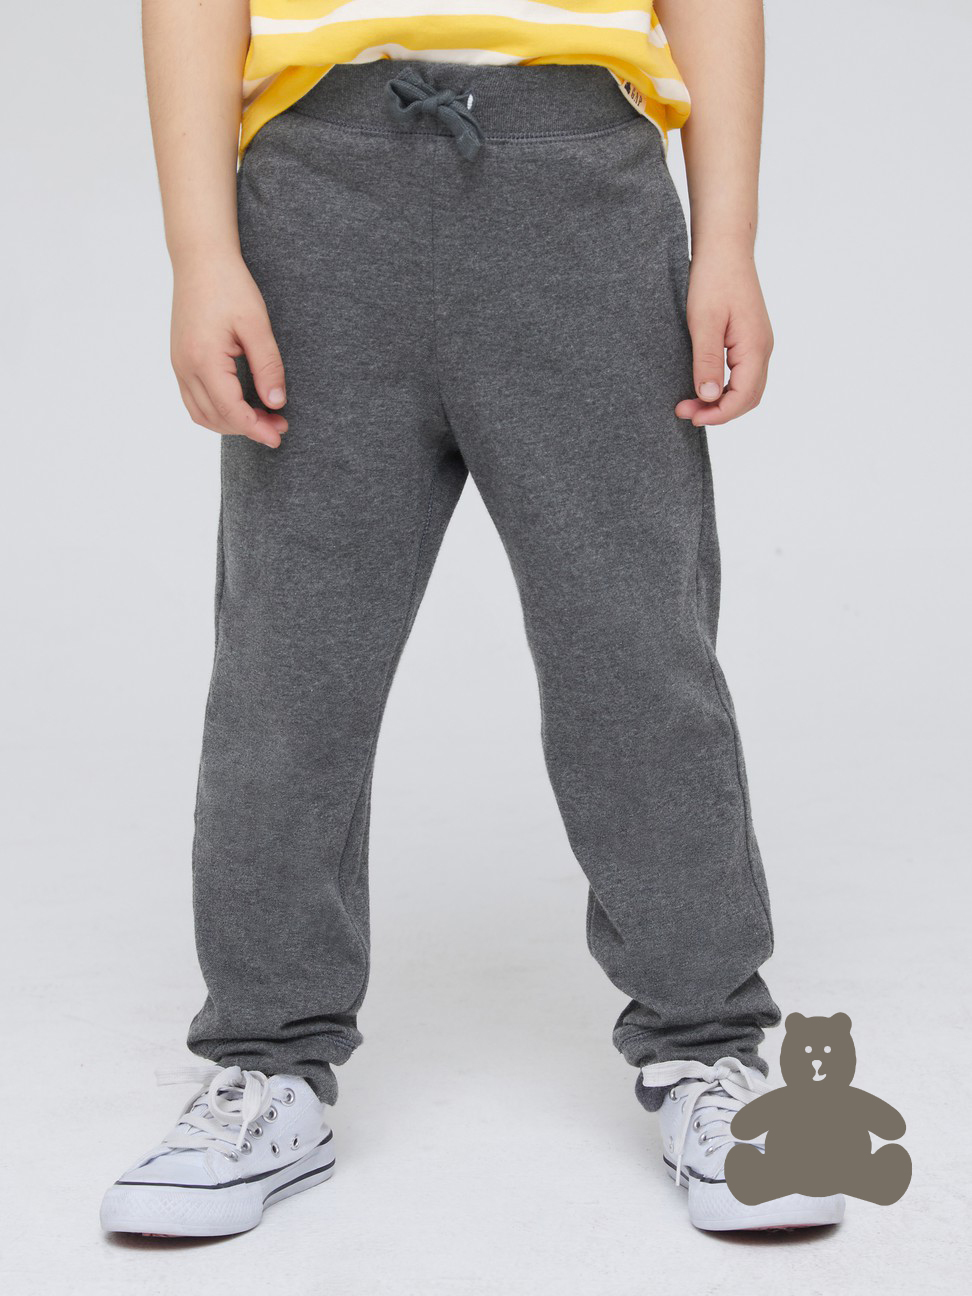 男幼童|純棉運動休閒褲 布萊納系列-碳灰色